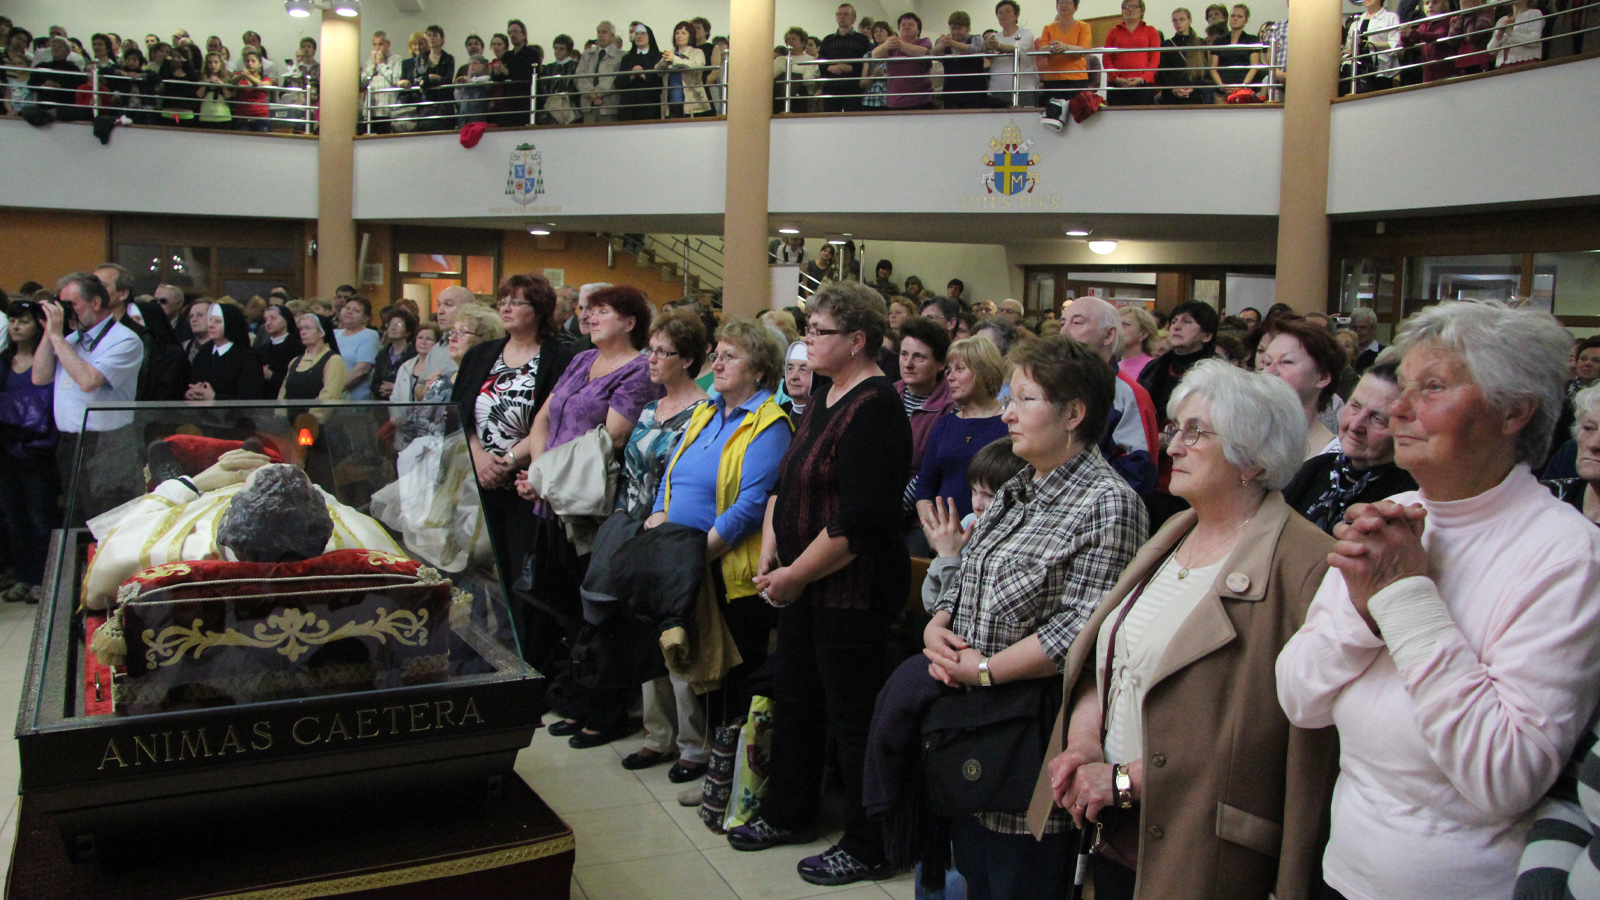 2013 Don Bosco prišiel do Banskej Bystrice